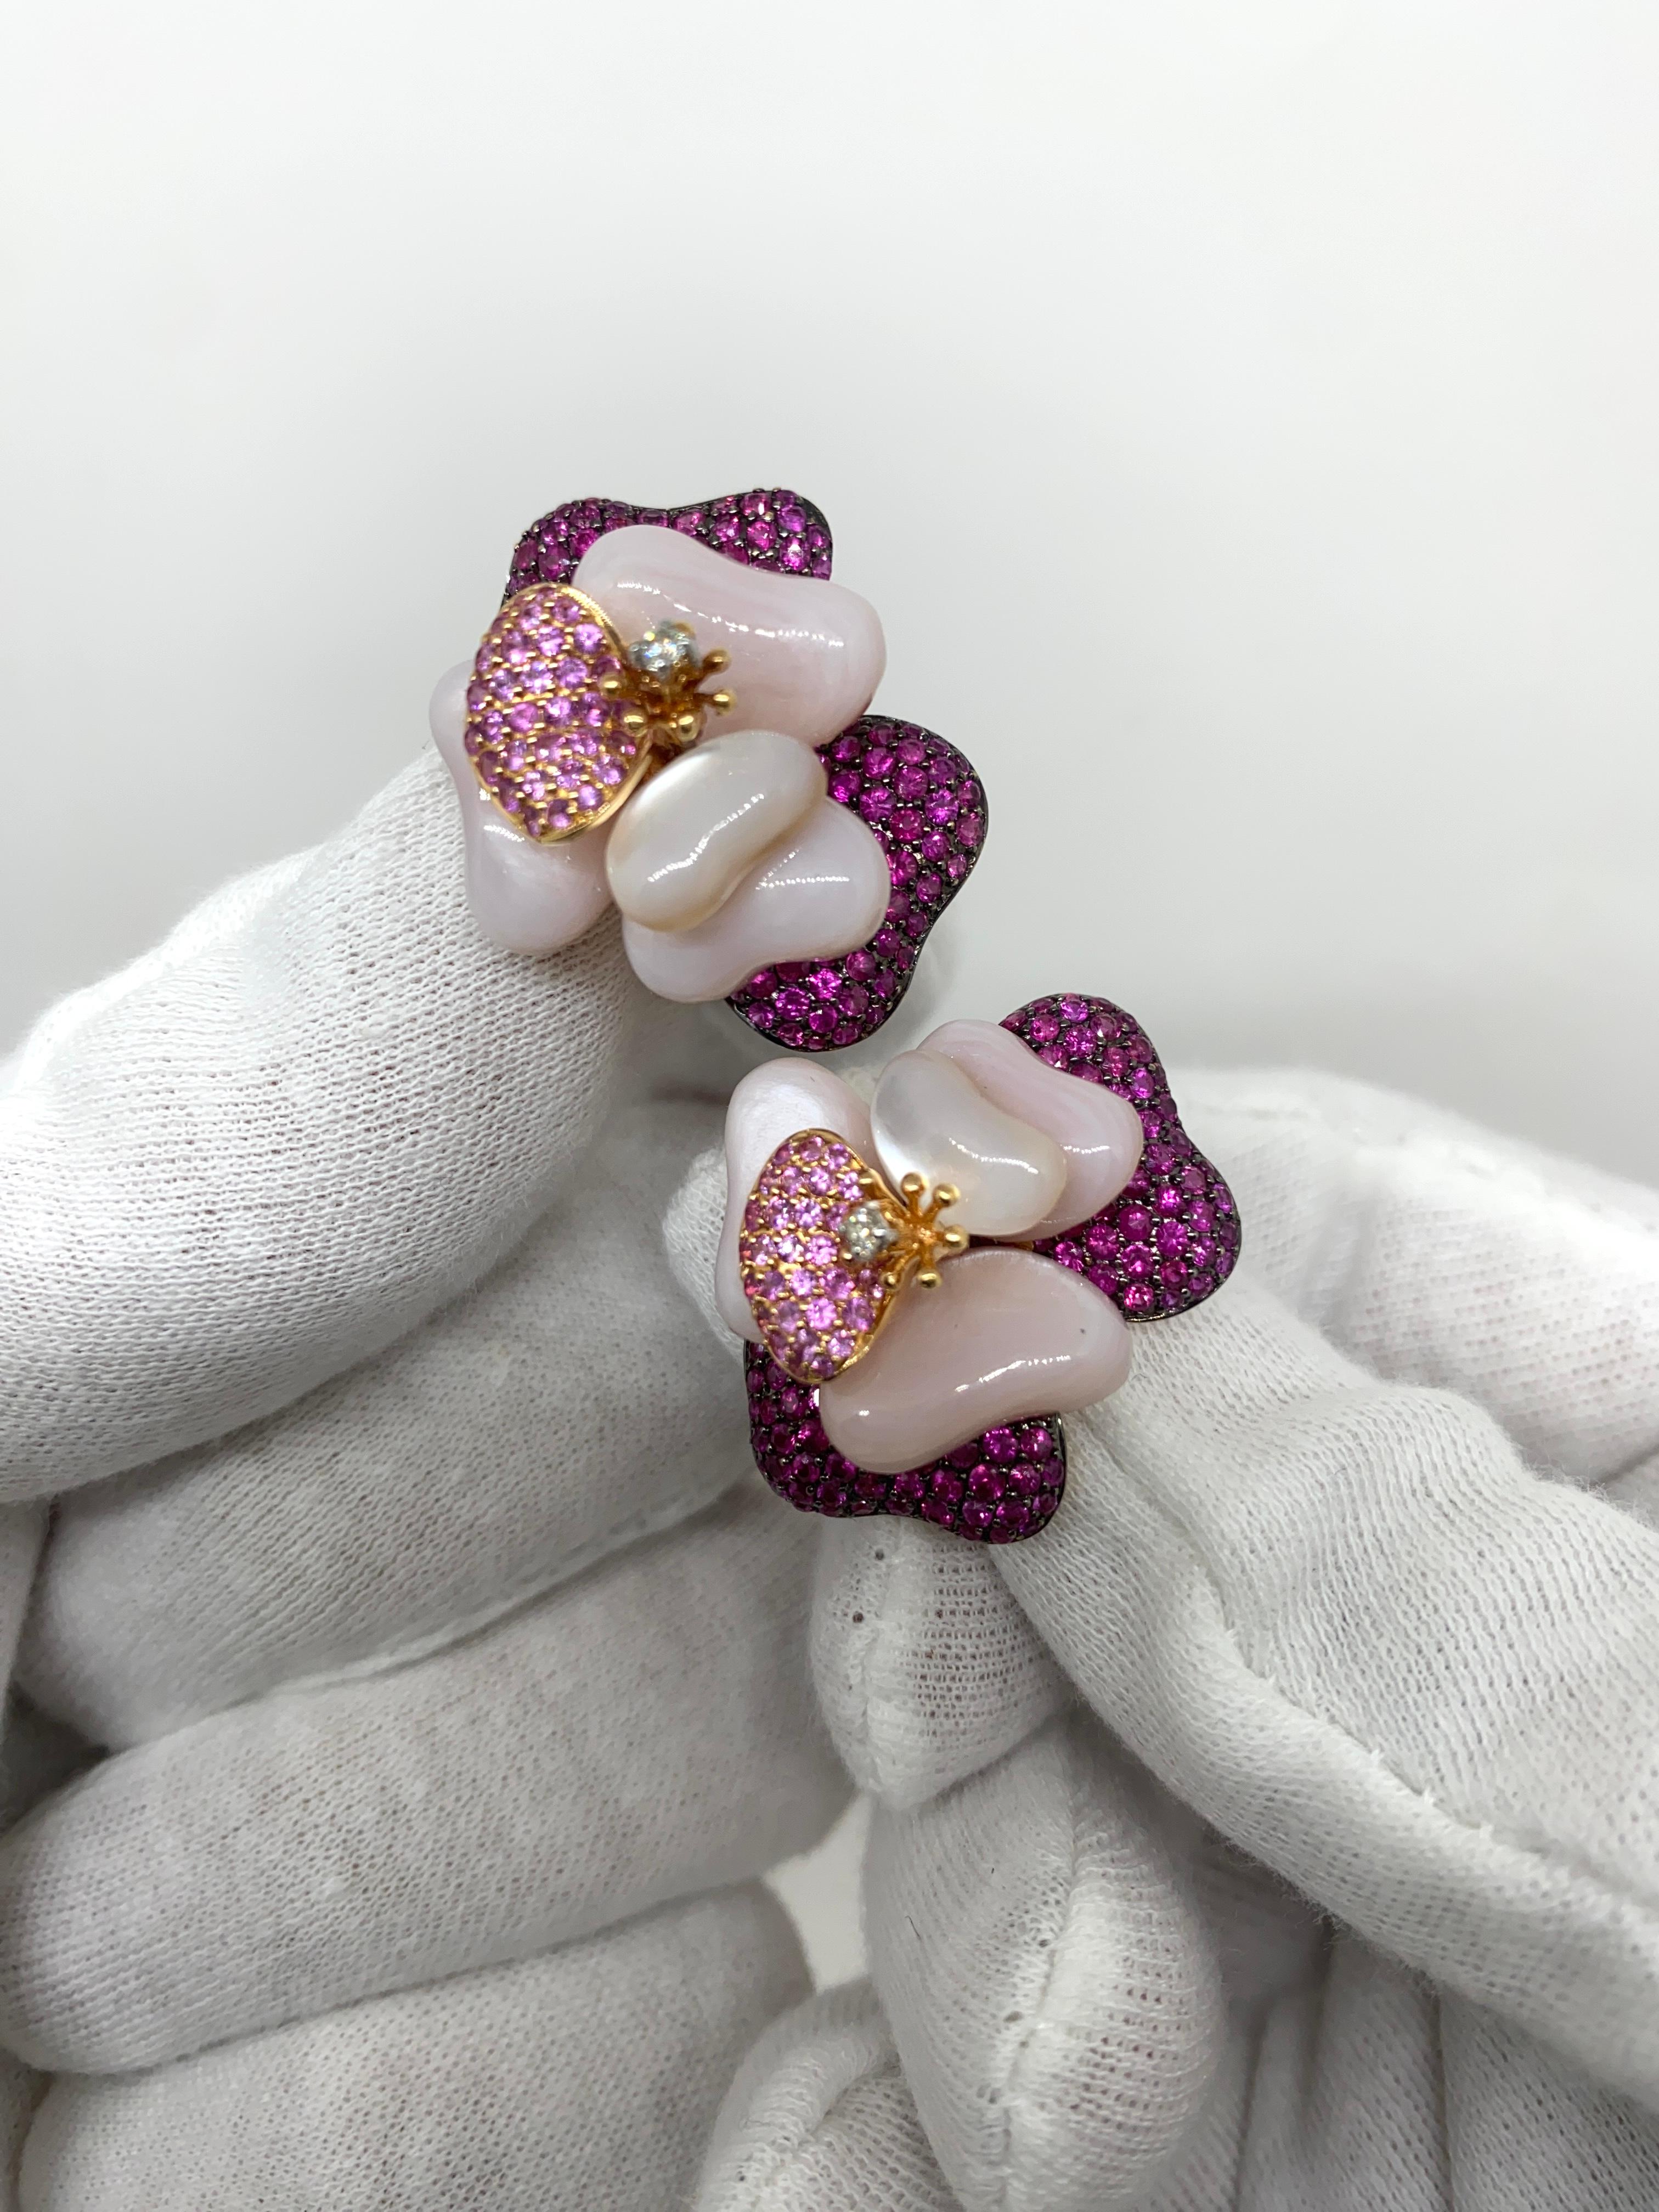 Ohrringe aus 18-karätigem Roségold mit natürlichen rosafarbenen Saphiren im Brillantschliff (ct.5.00) und natürlichen weißen Diamanten im Brillantschliff (ct.0.80) sowie rosa Perlmutt.

Willkommen in unserer Schmuckkollektion, in der jedes Stück